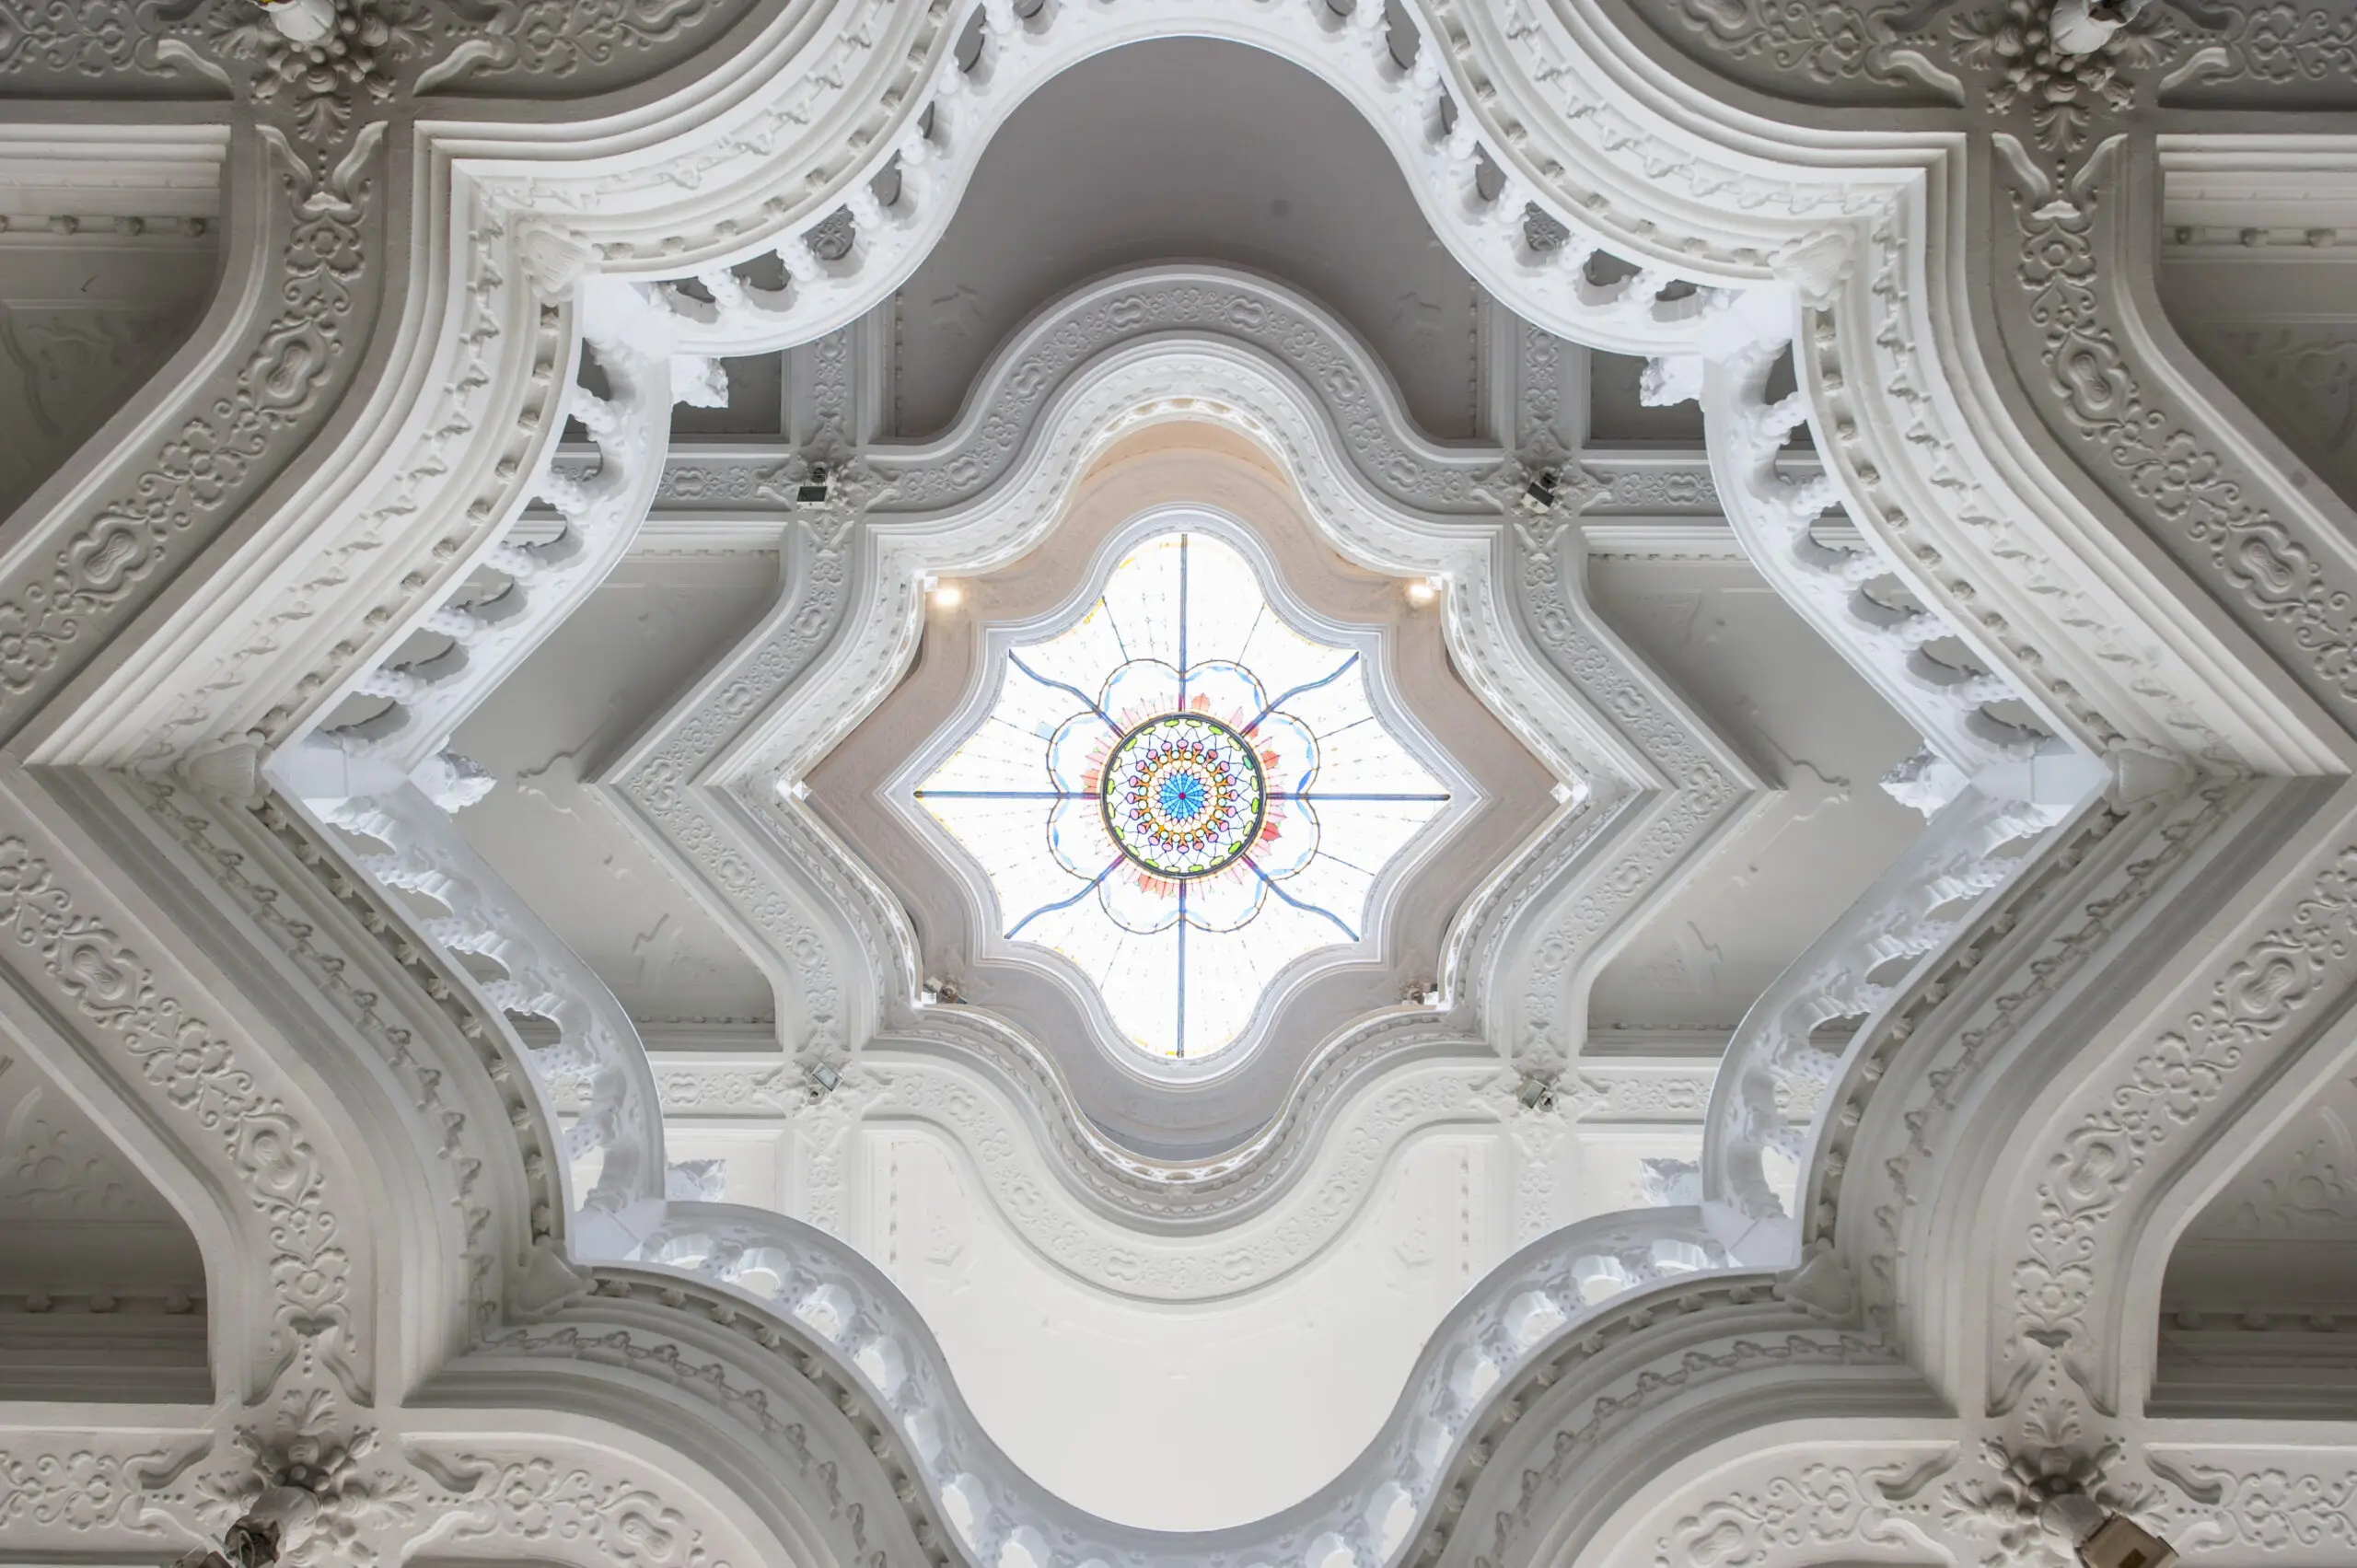 Wandbild (4636) TC – Kuppelfenster Budapest präsentiert: Kreatives,Details und Strukturen,Architektur,Detailaufnahmen,Sonstige Architektur,Sehenswürdigkeiten,Sonstiges Kreatives,Architekturdetails